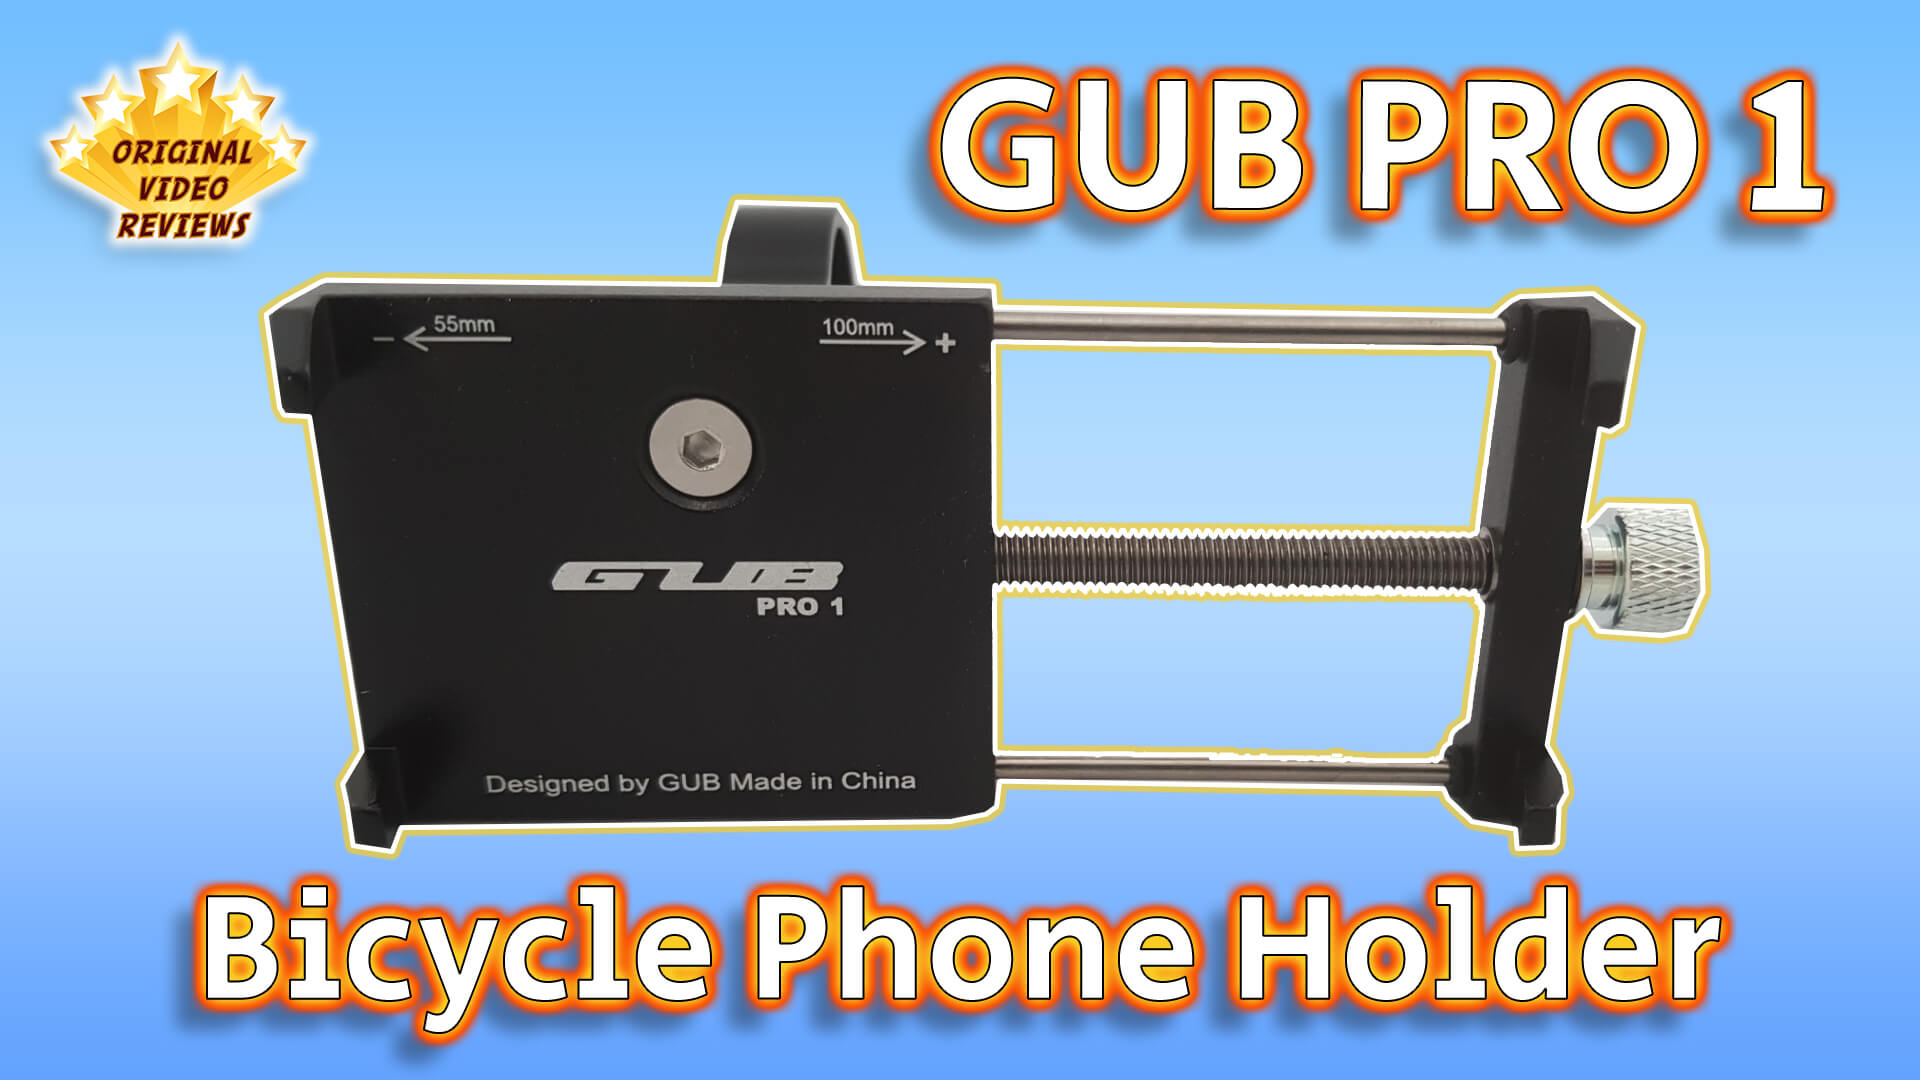 GUB PRO 1 Bicycle Phone Holder (Thumbnnail)